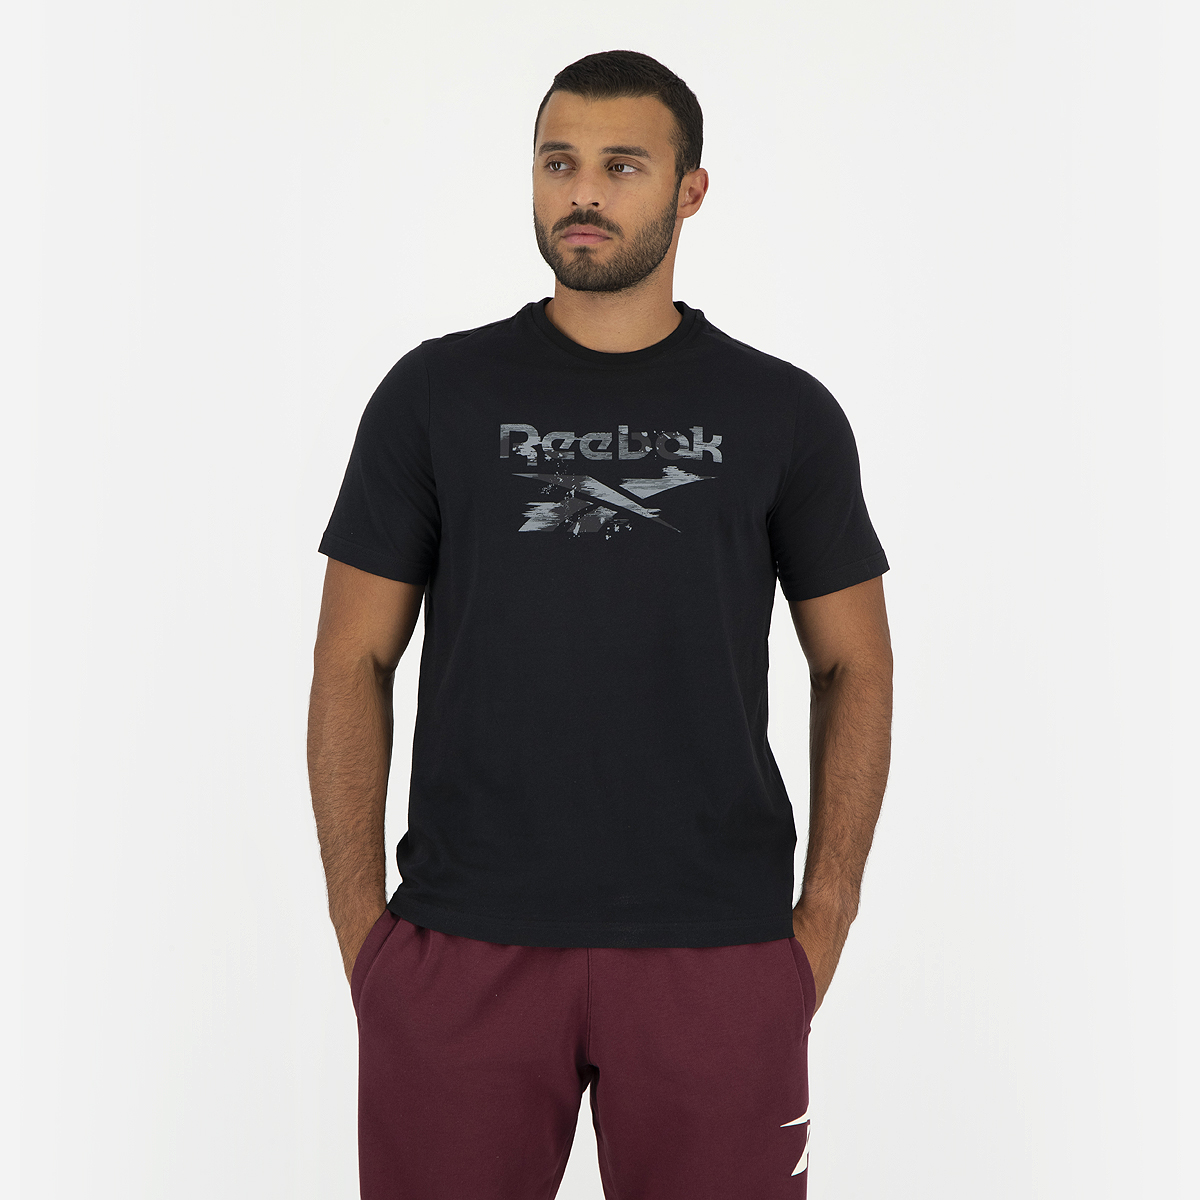 Reebok Men's Identity Modern Camo T-Shirt, XL, White